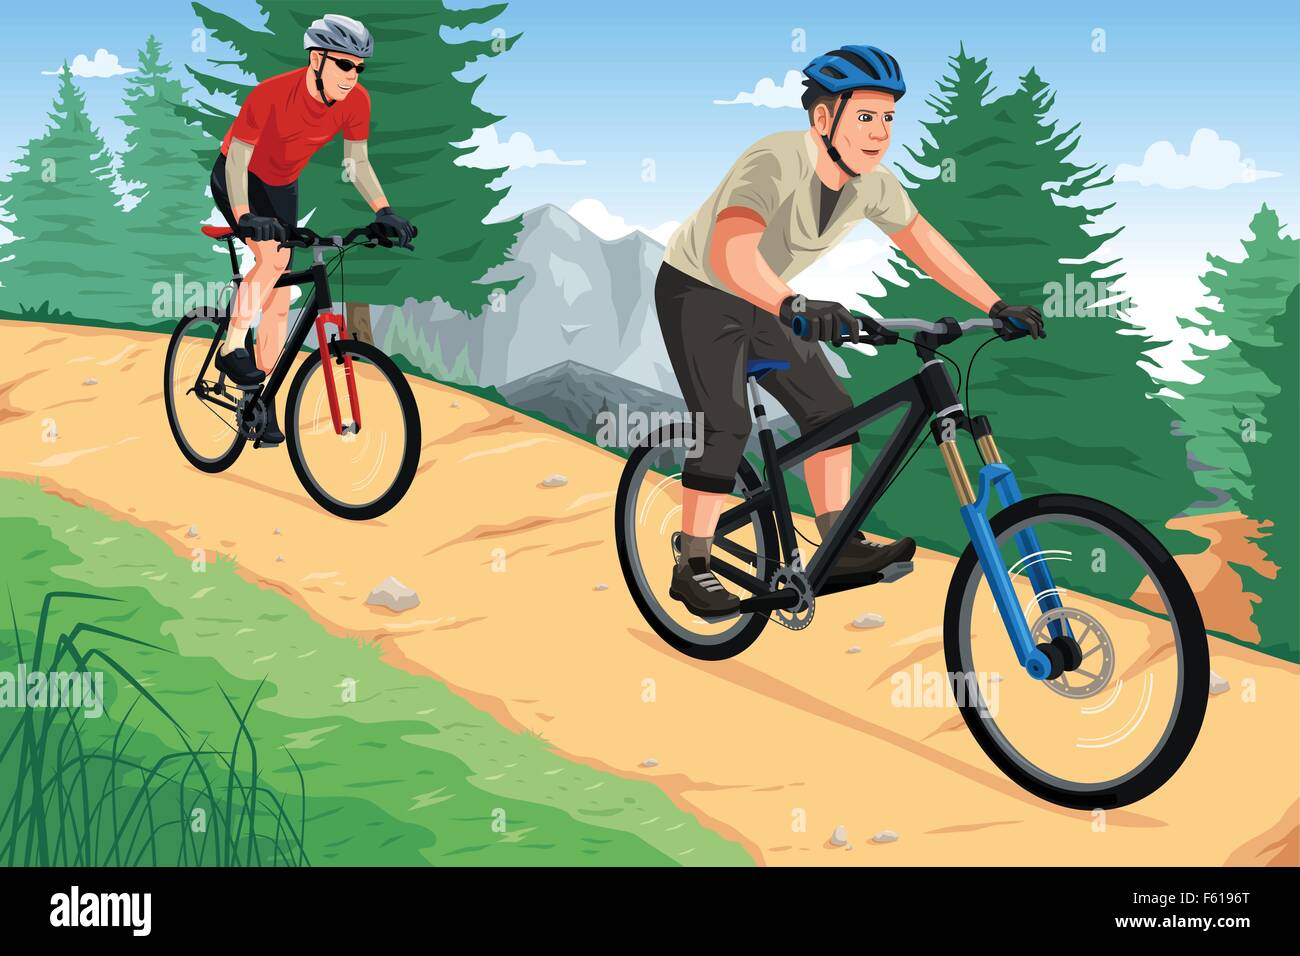 Una illustrazione vettoriale delle persone in mountain bike sul Monte Illustrazione Vettoriale